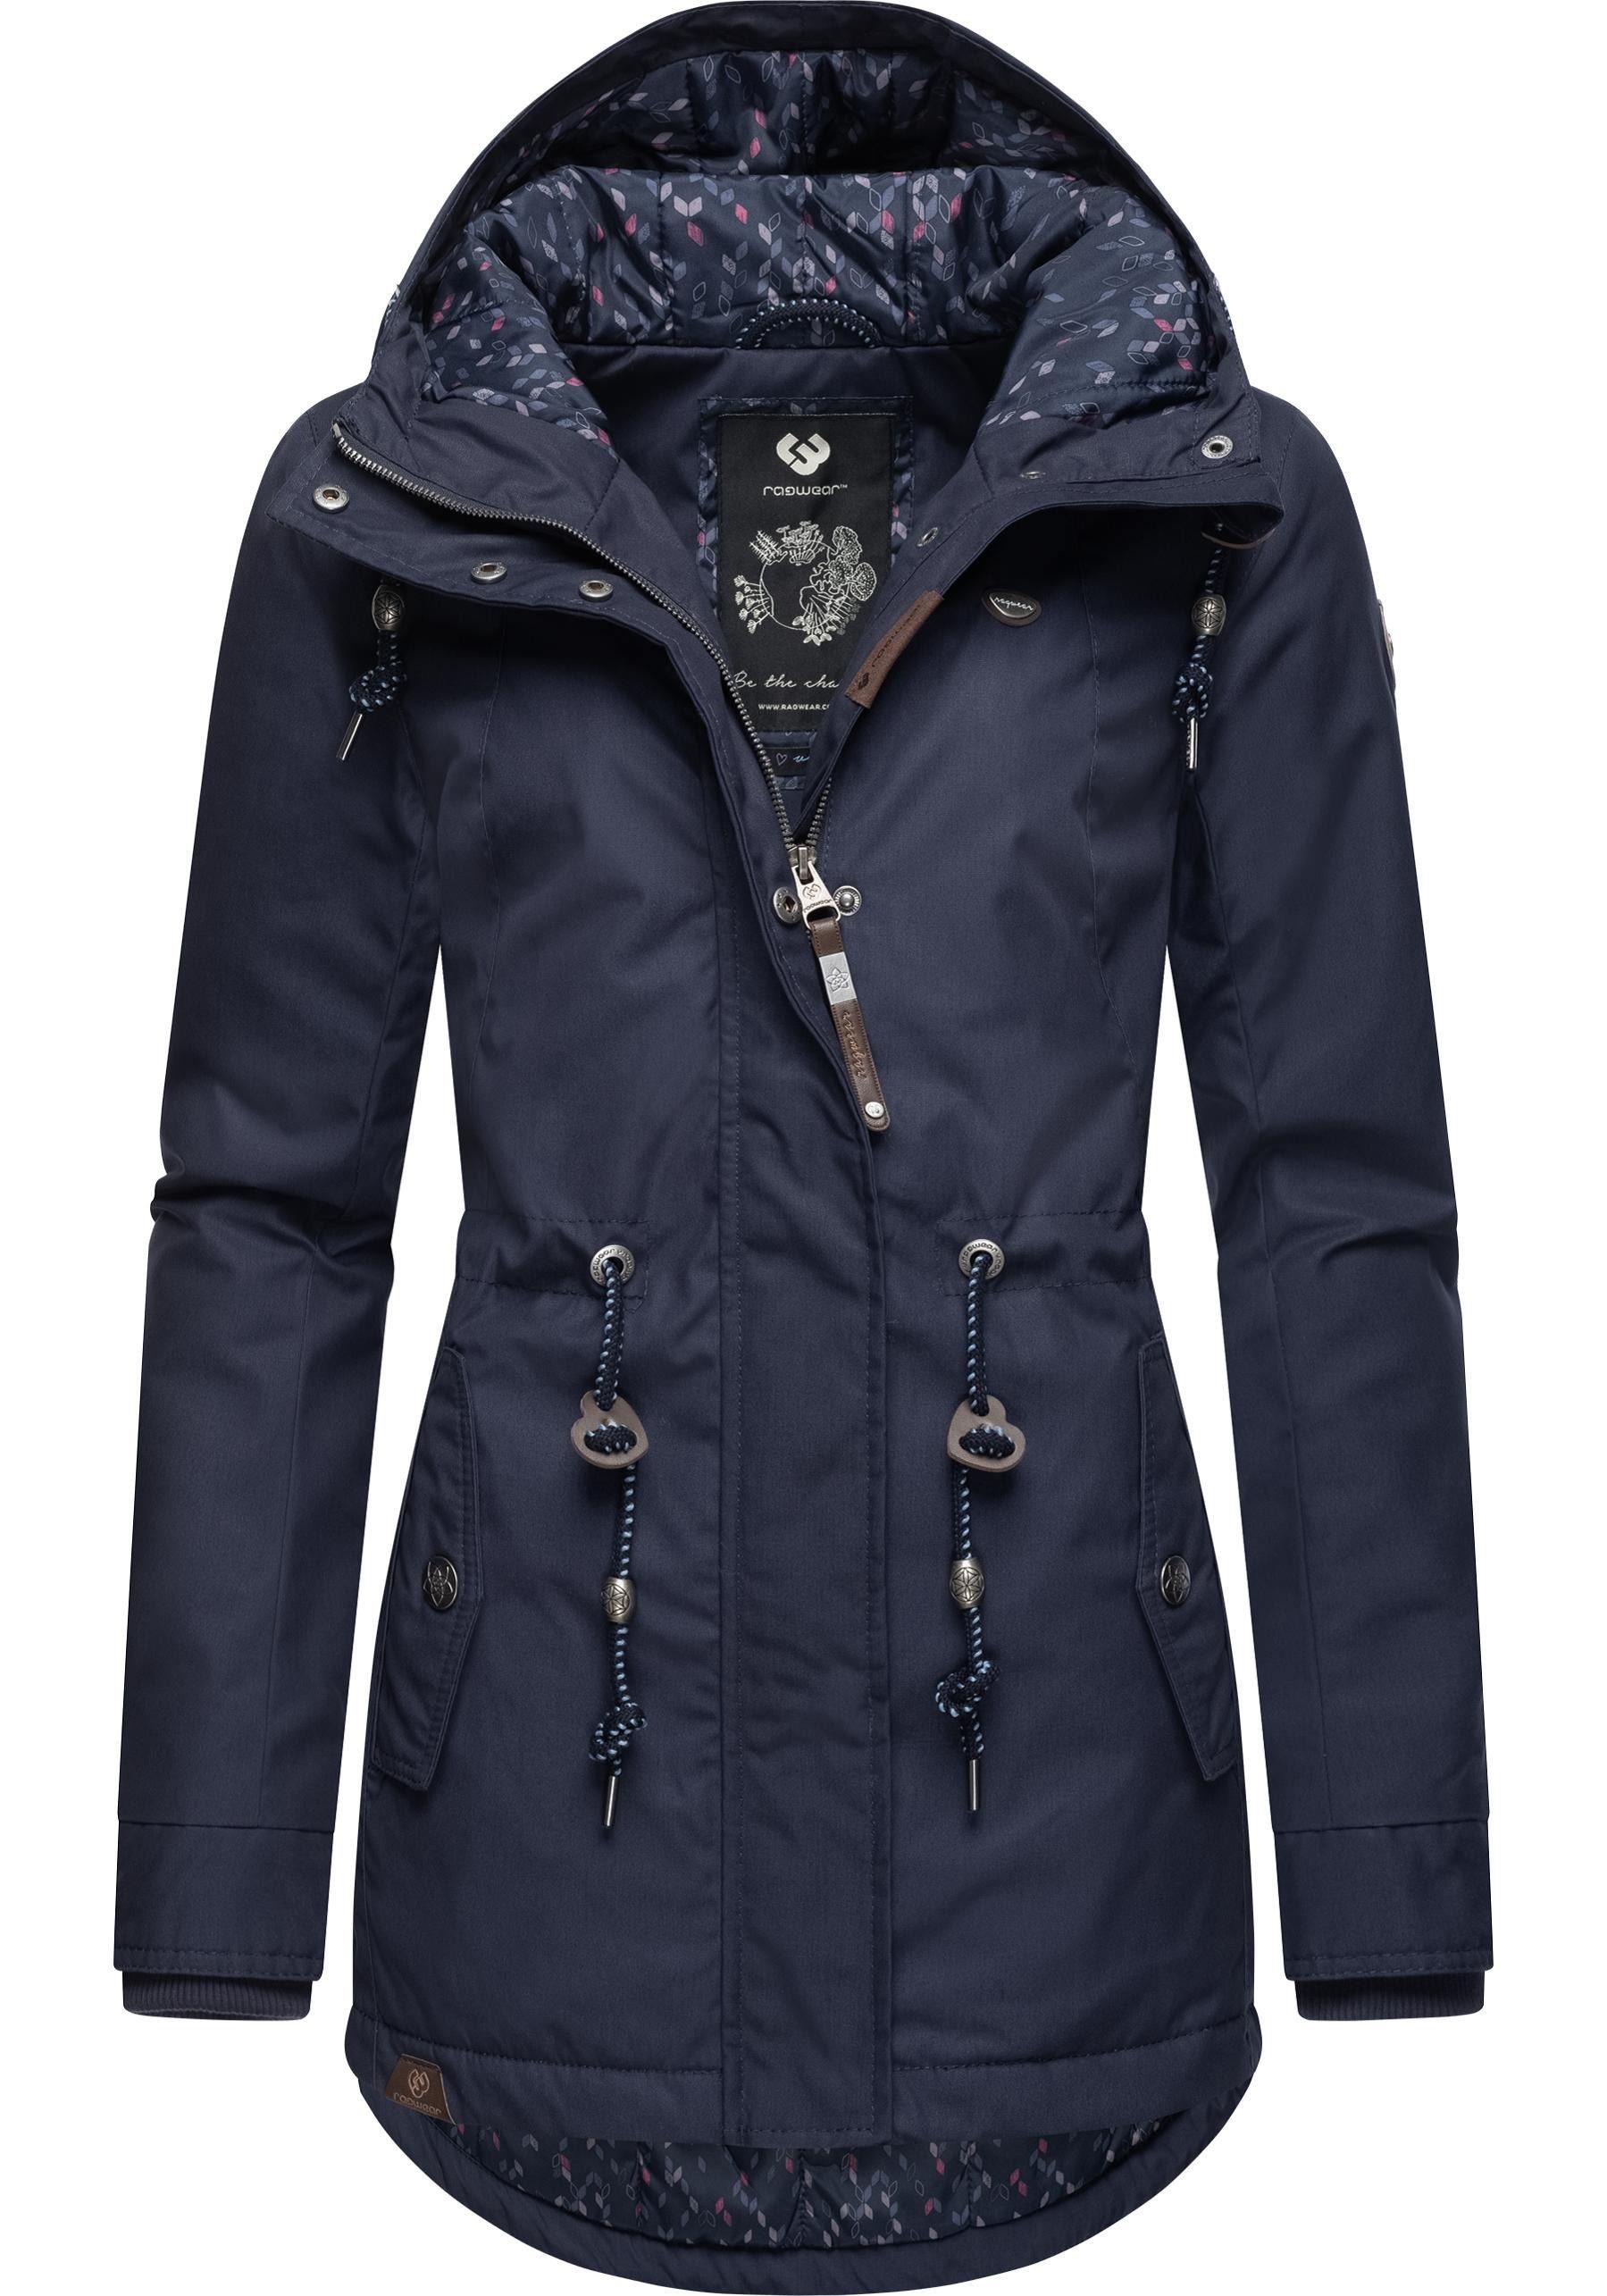 Ragwear Winterjacke Monadis die graublau kalte Black für Label Jahreszeit stylischer Winterparka